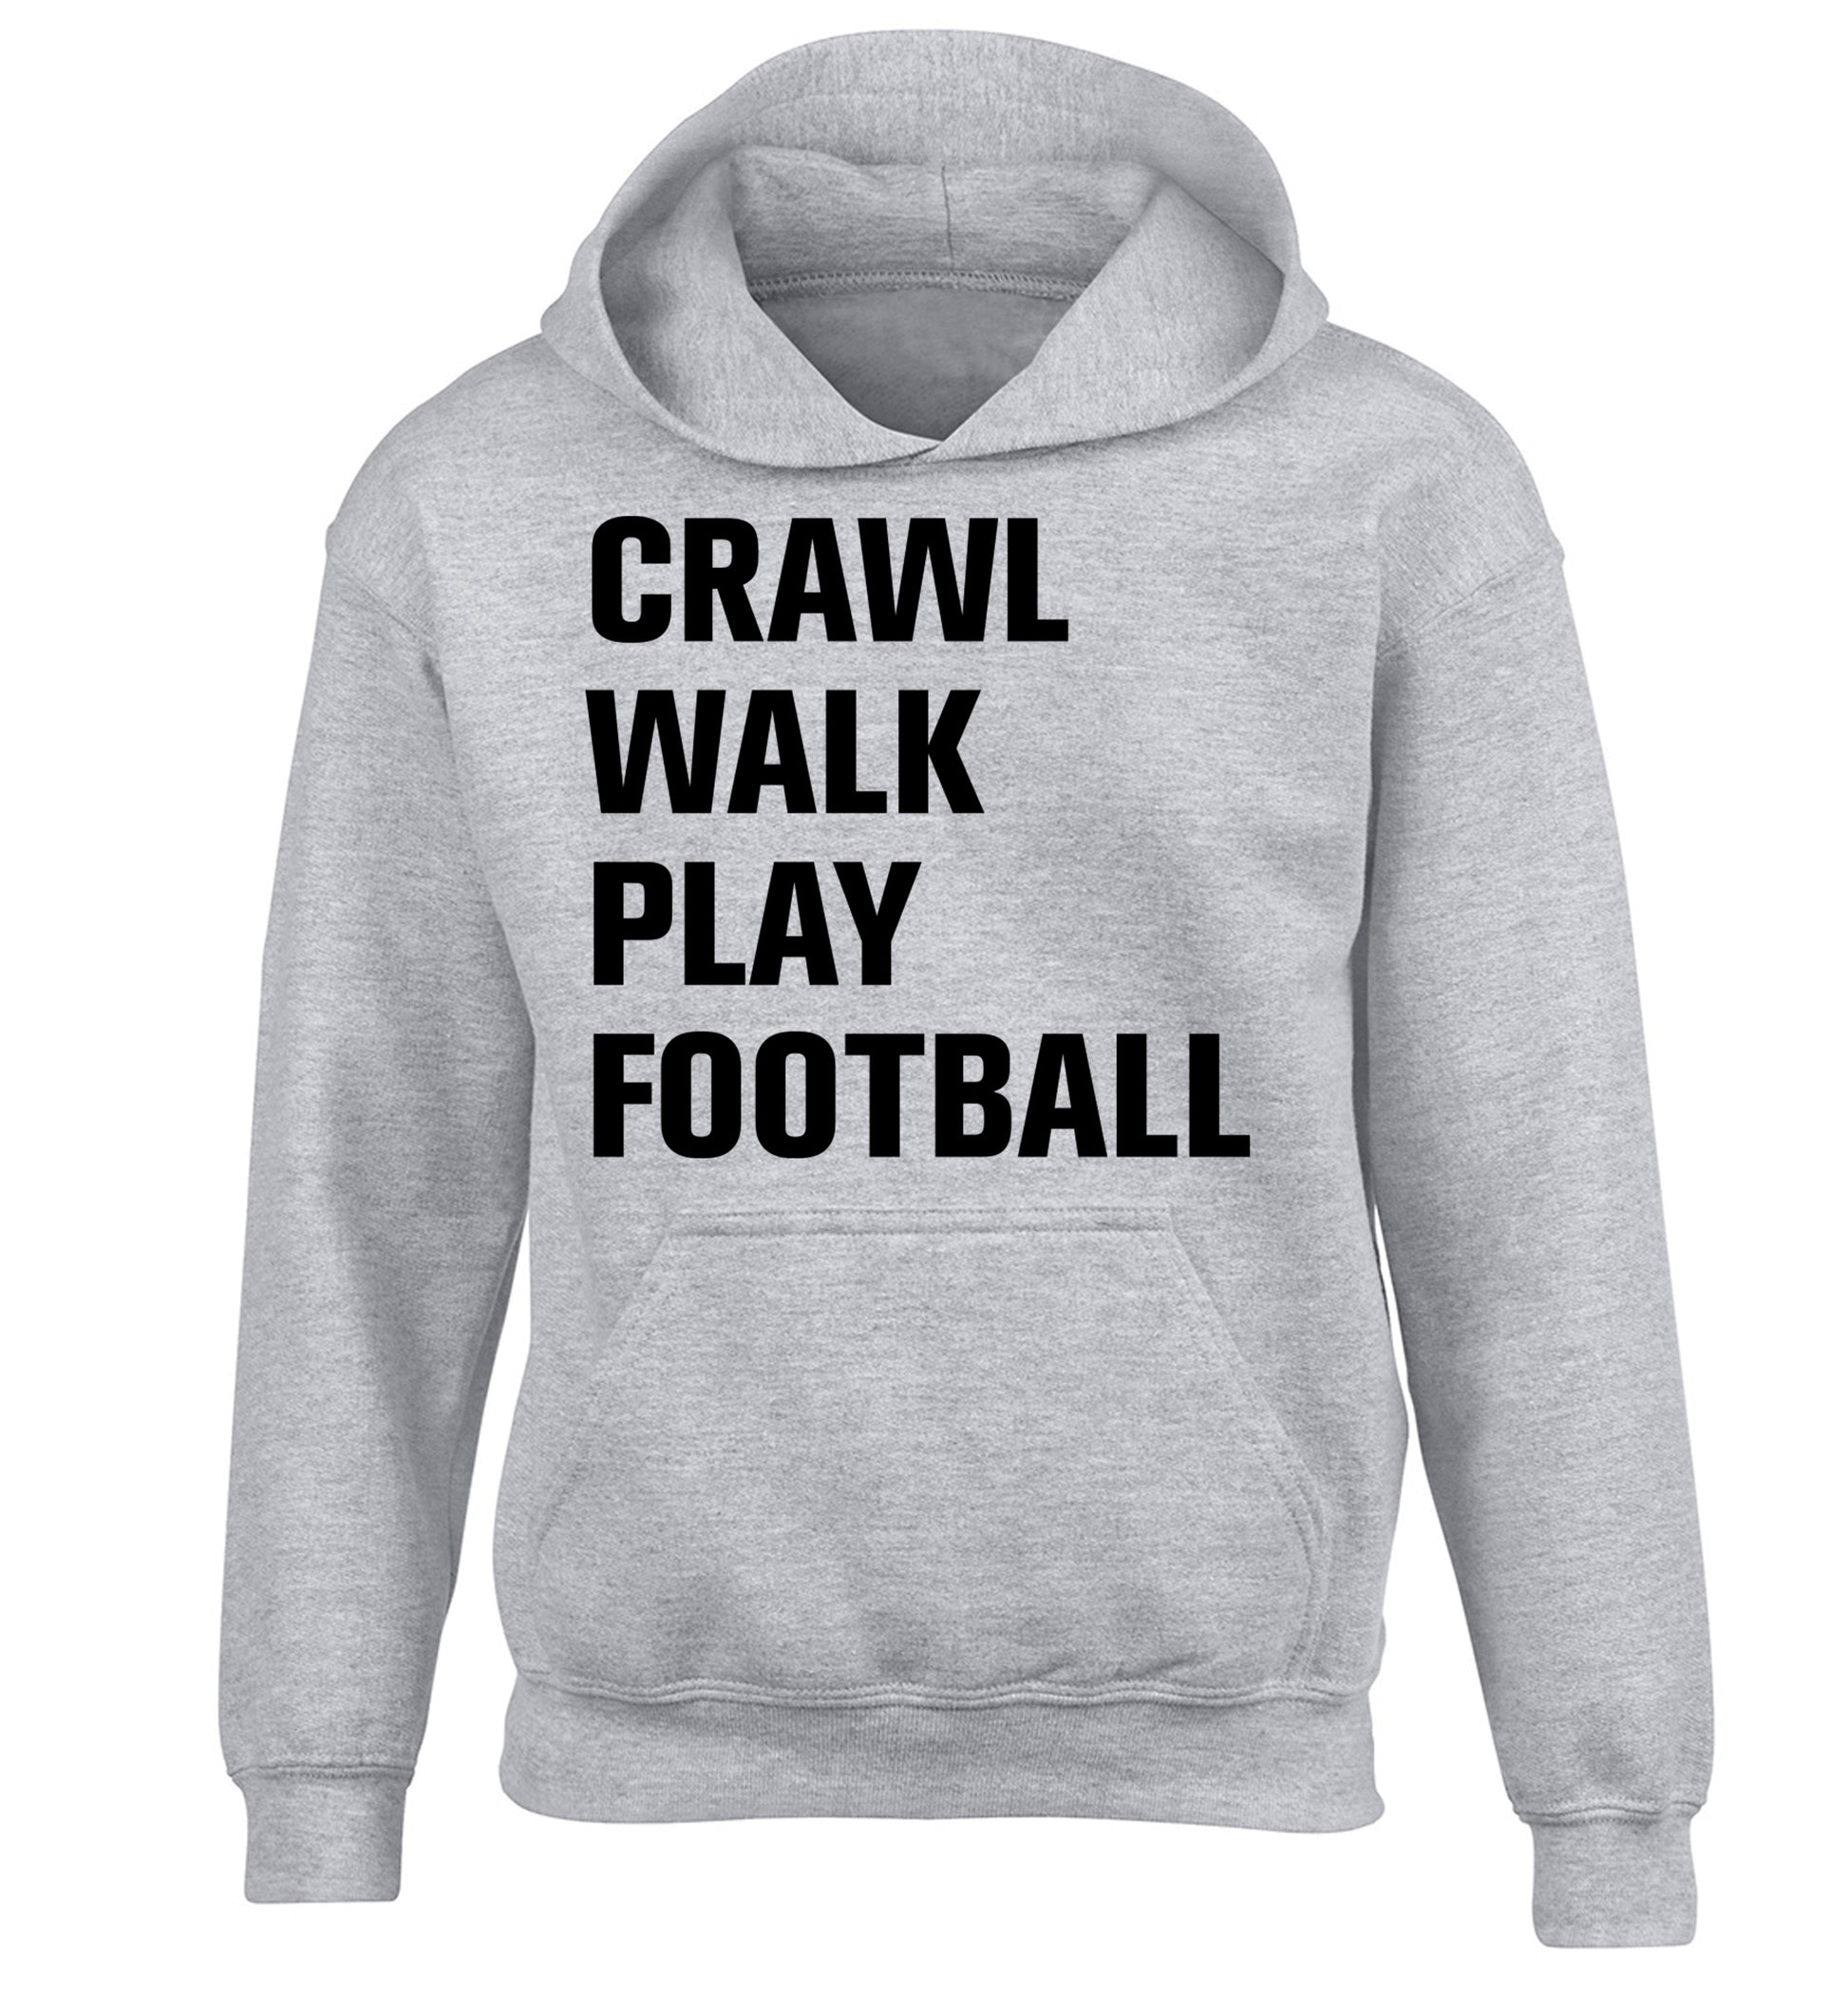 Crawl, walk, play football children's grey hoodie 12-13 Years